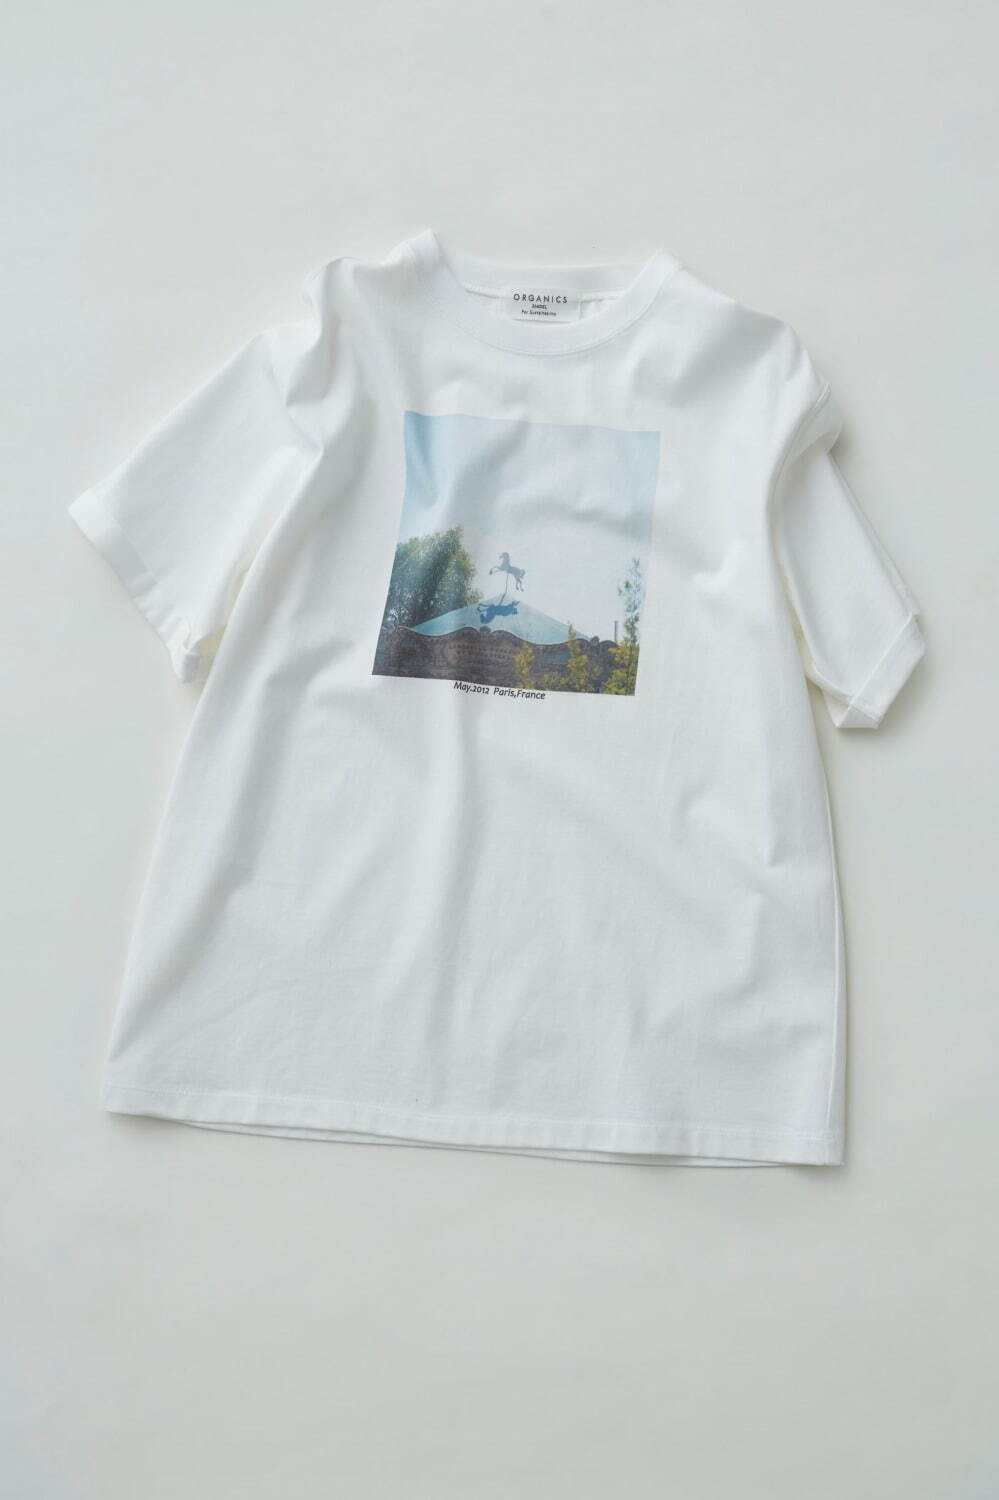 「コラボレーションTシャツ」5,400円